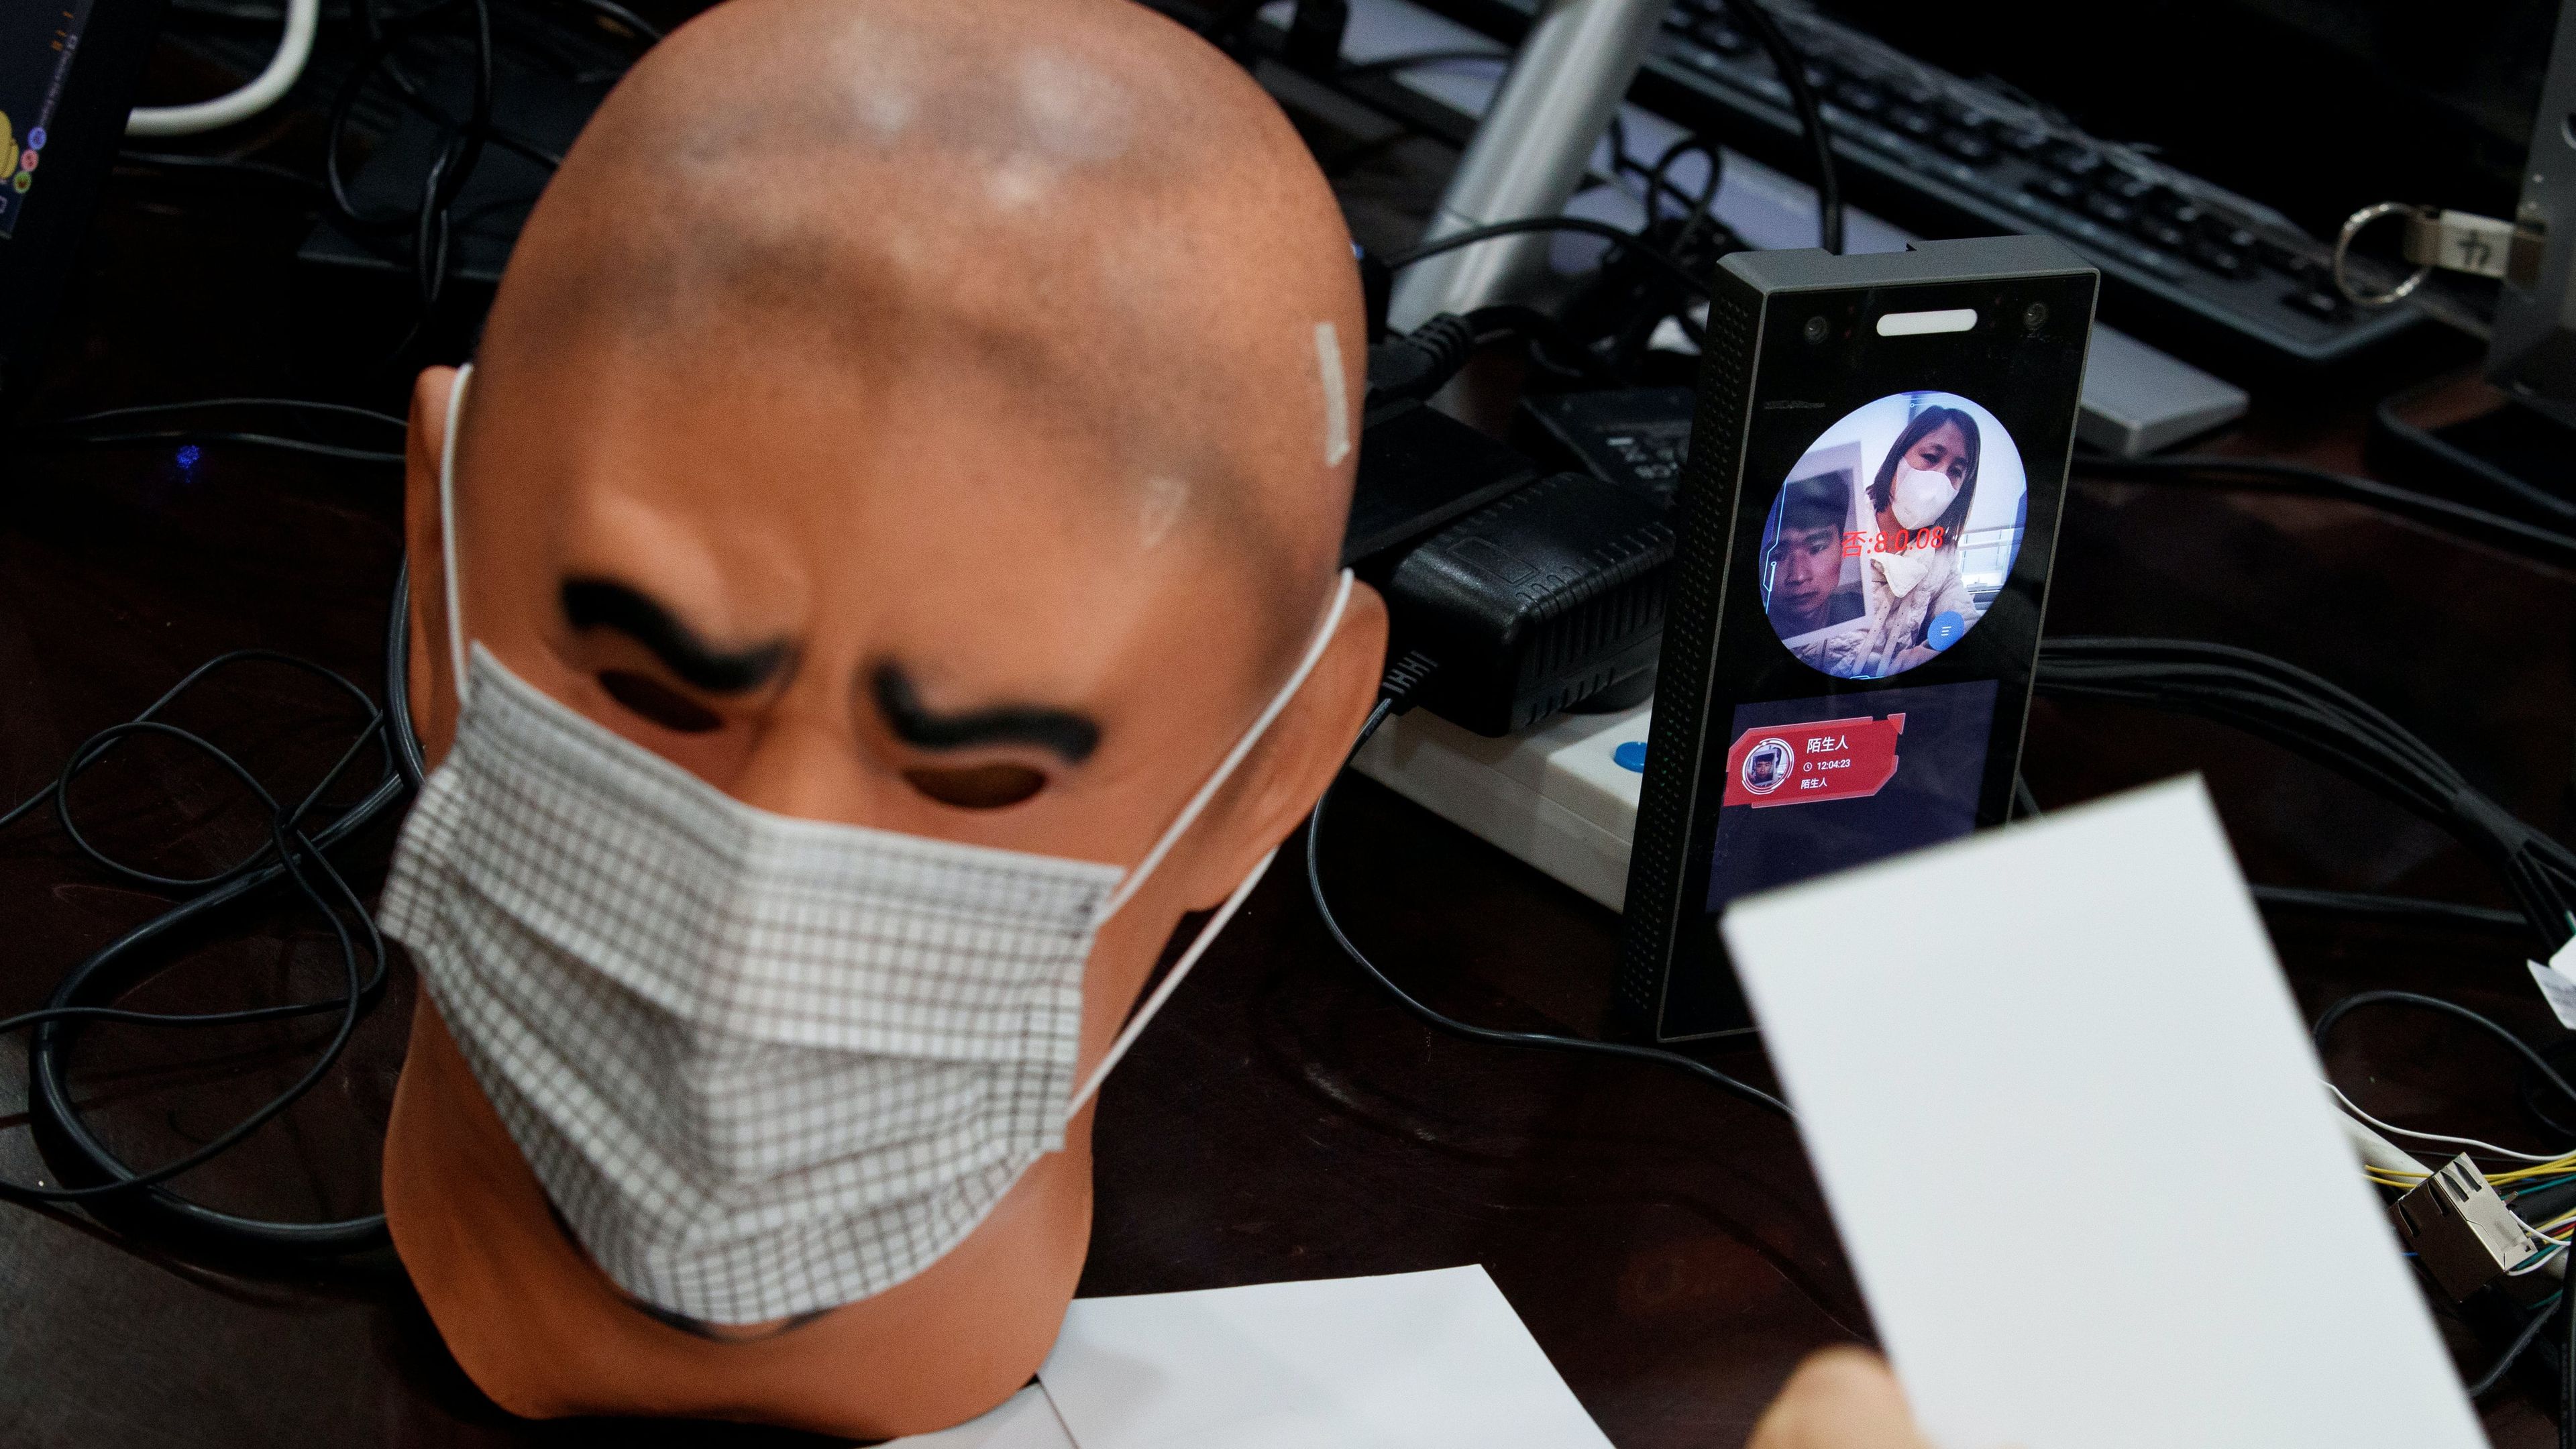 Pruebas de reconocimiento facial a un maniquí con mascarilla durante la crisis del COVID-19 en China.